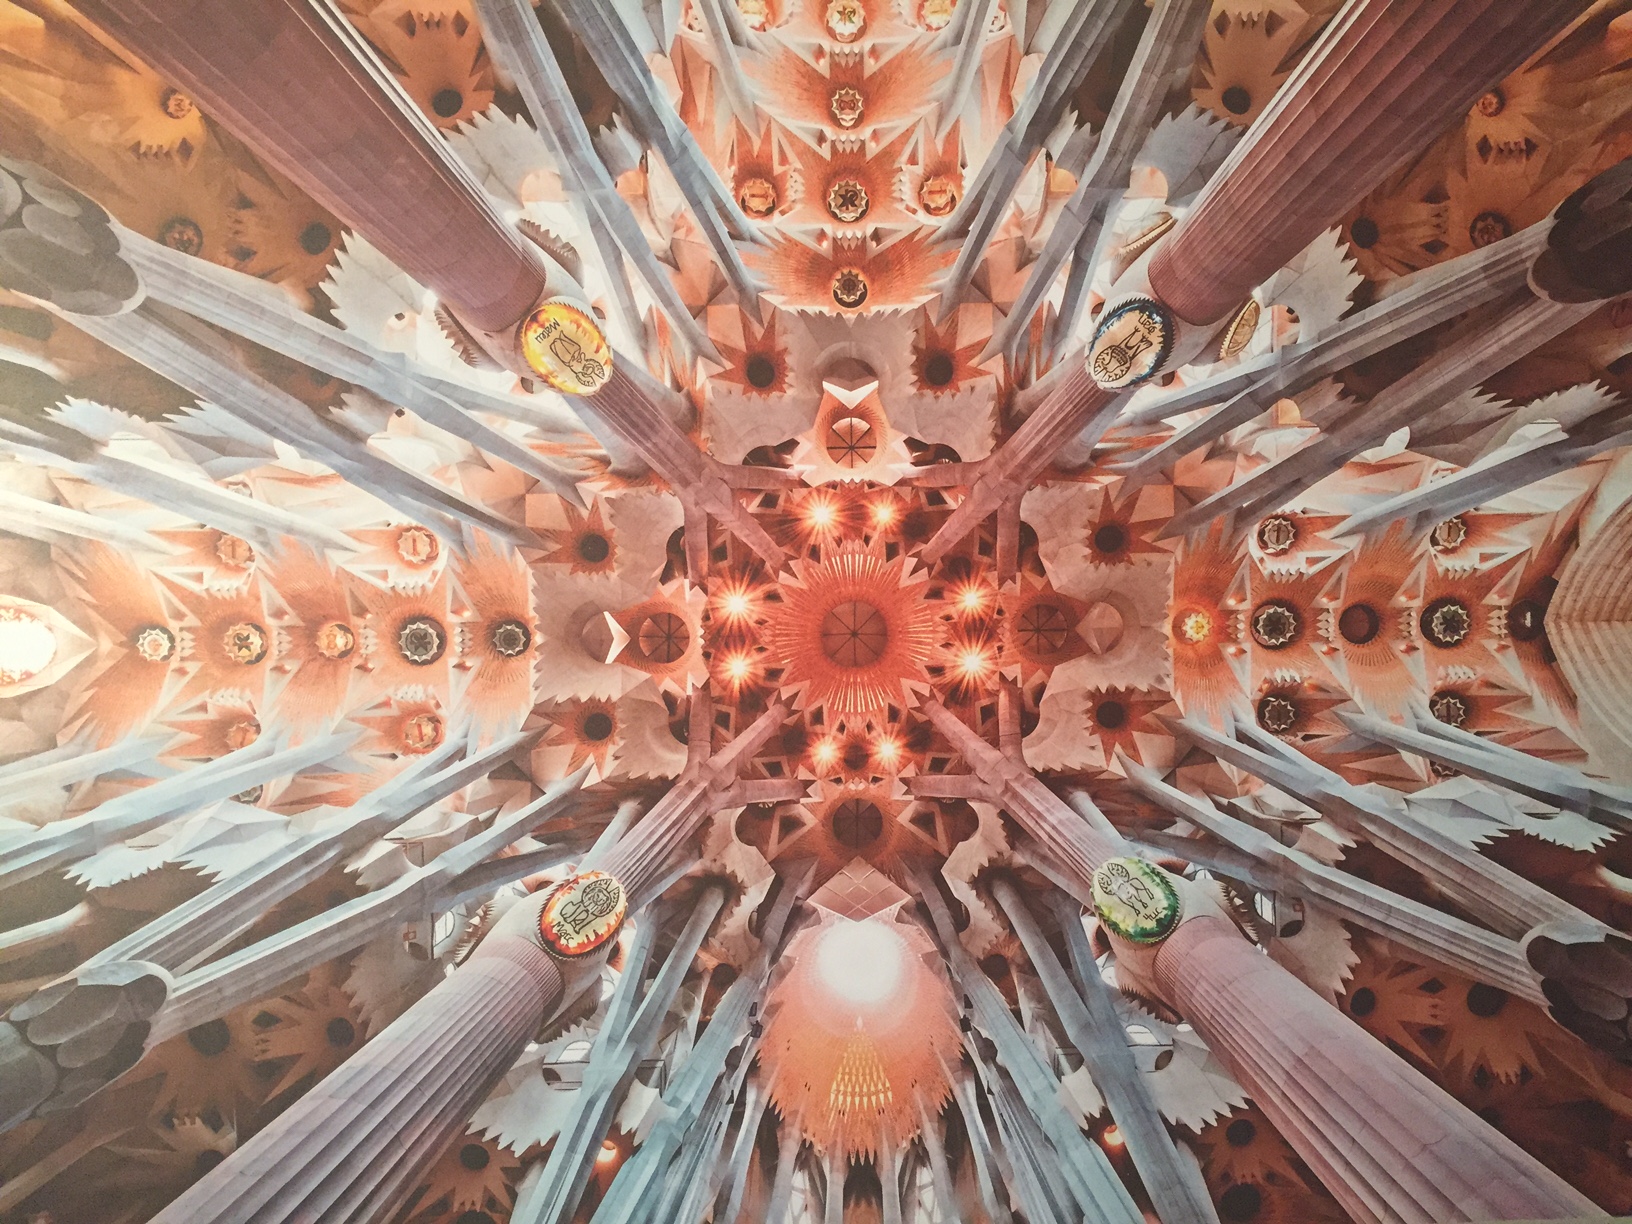 A foto da Basílica da Sagrada Família, mostra como todas as peças e maquetes do exposição se "juntam", nesse belissímo resultado